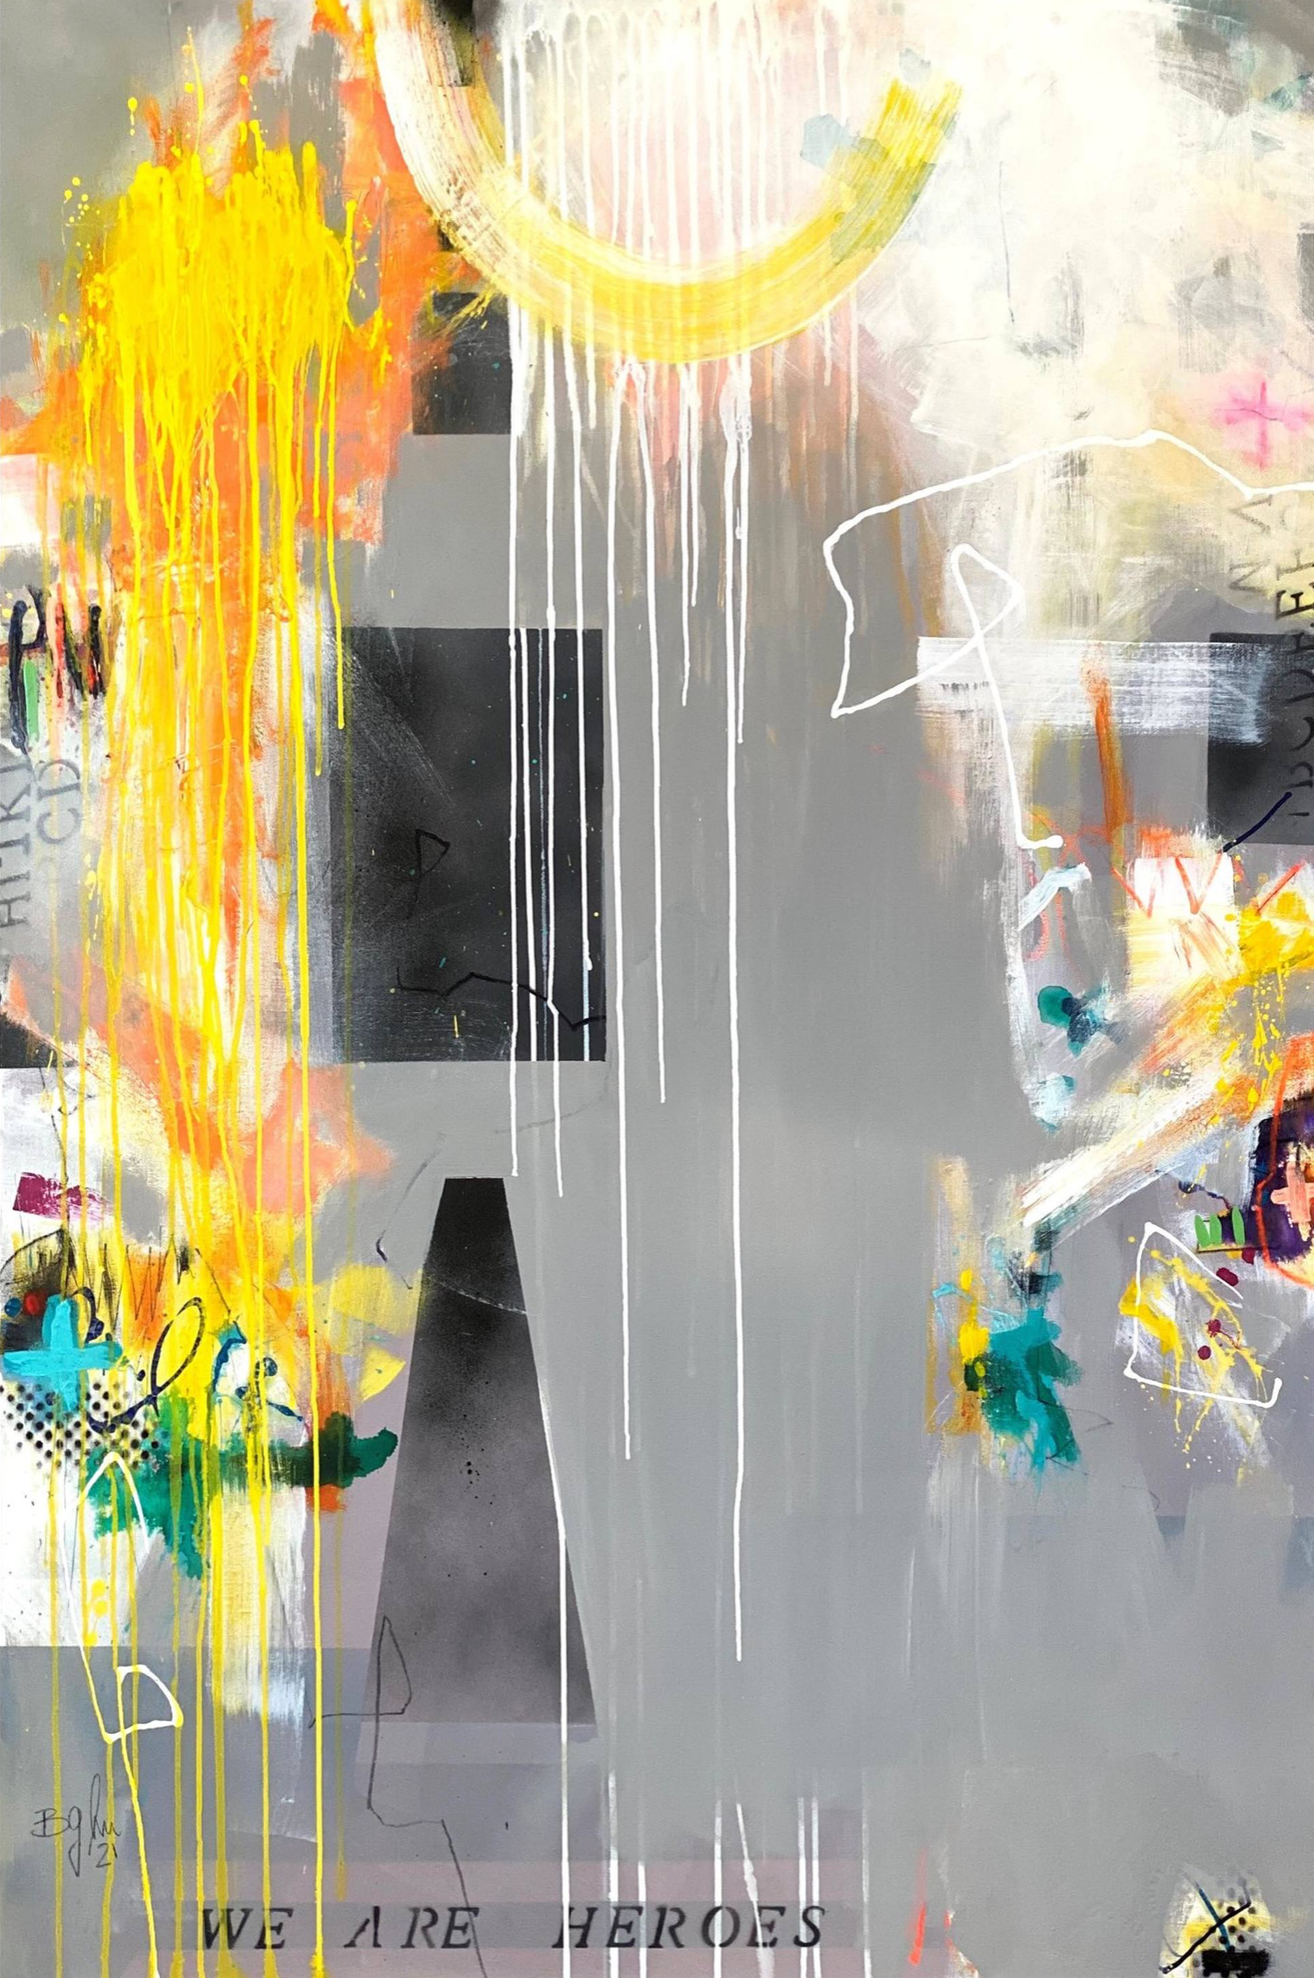 Bea G Schuberts "We are heroes V (XL) Painting" ist ein abstraktes, farbenfrohes 2-teiliges Gemälde auf Leinwand